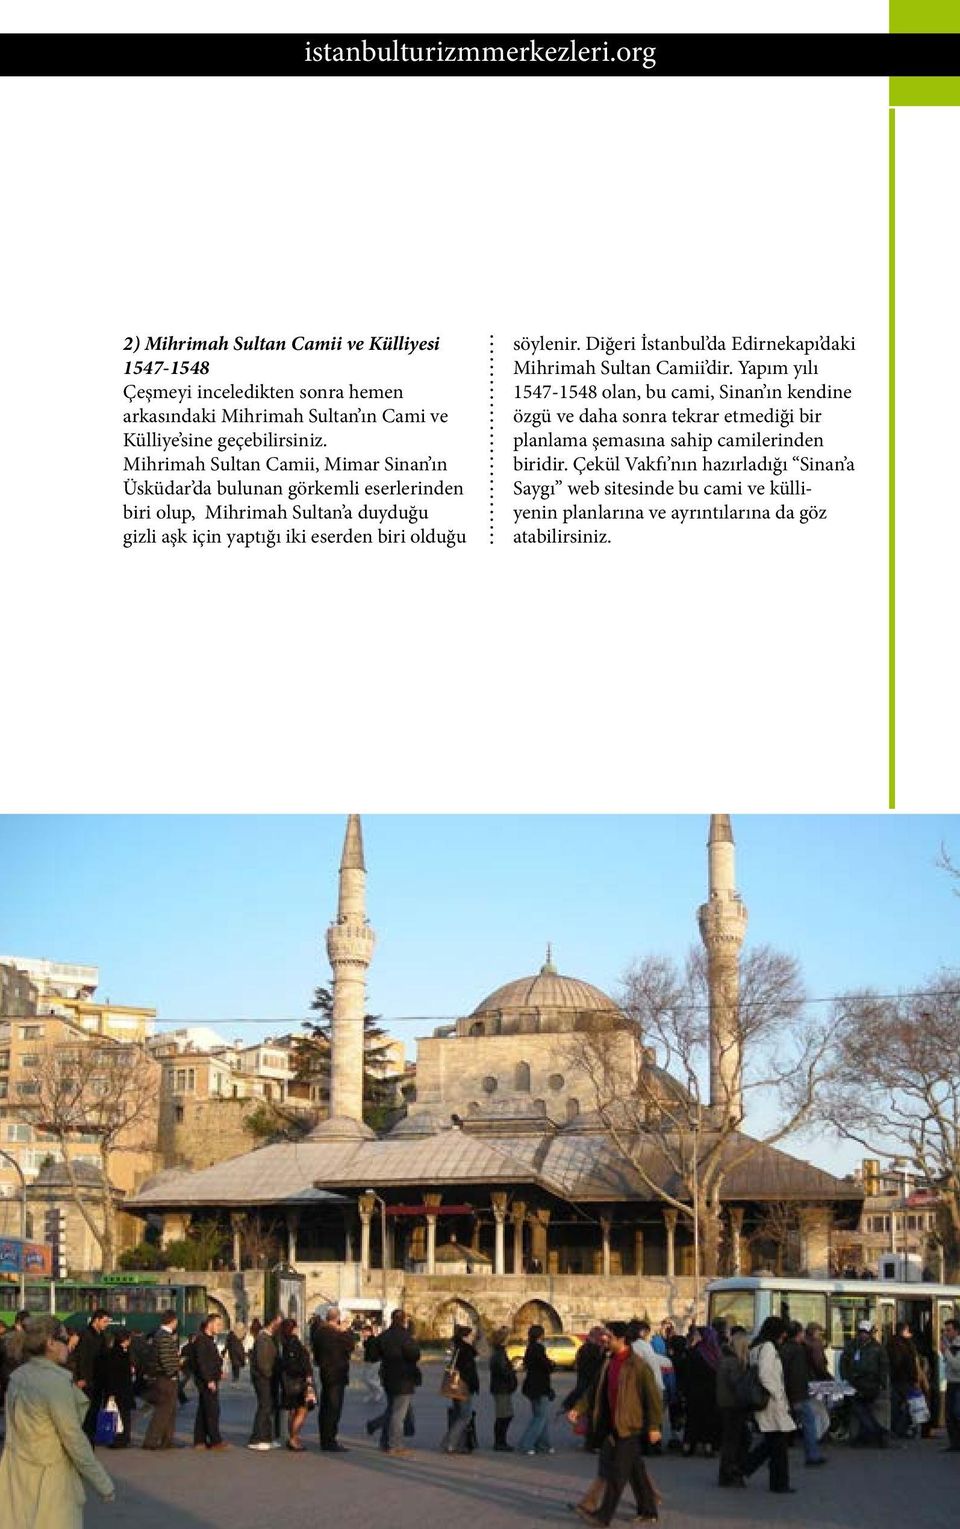 söylenir. Diğeri İstanbul da Edirnekapı daki Mihrimah Sultan Camii dir.